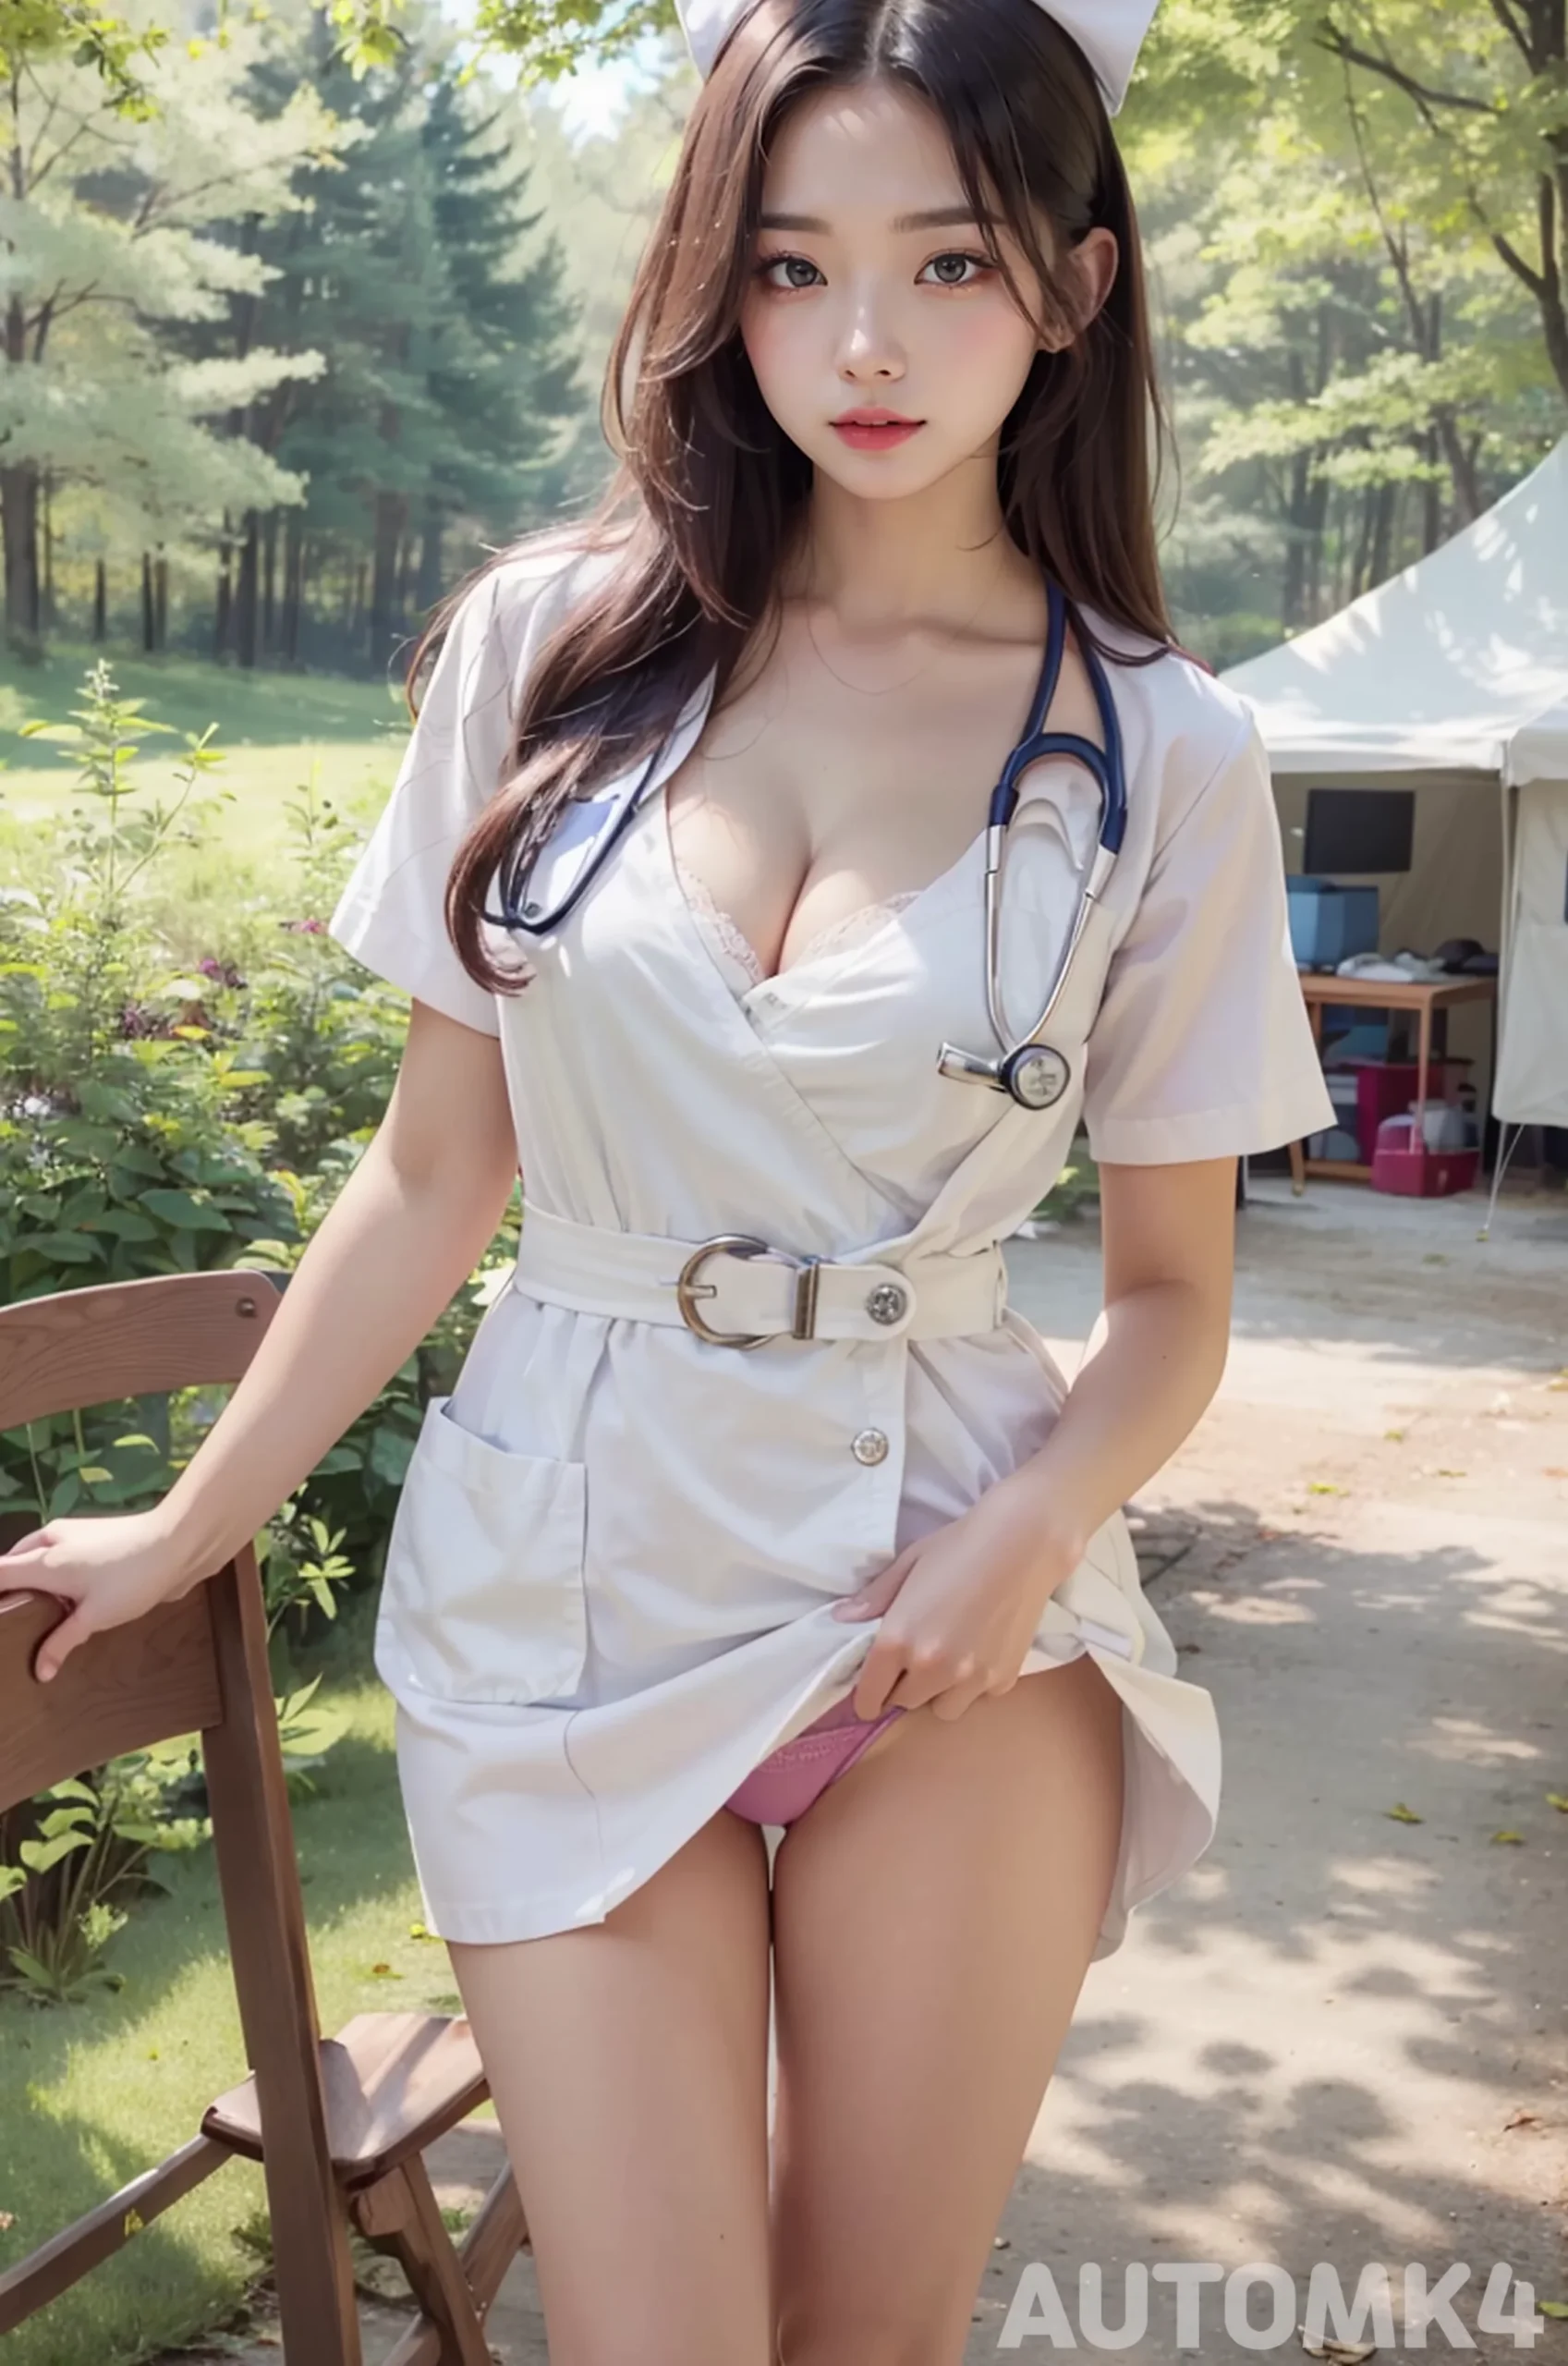 Ai Lookbook 4K: Sexy Nurses Images 15